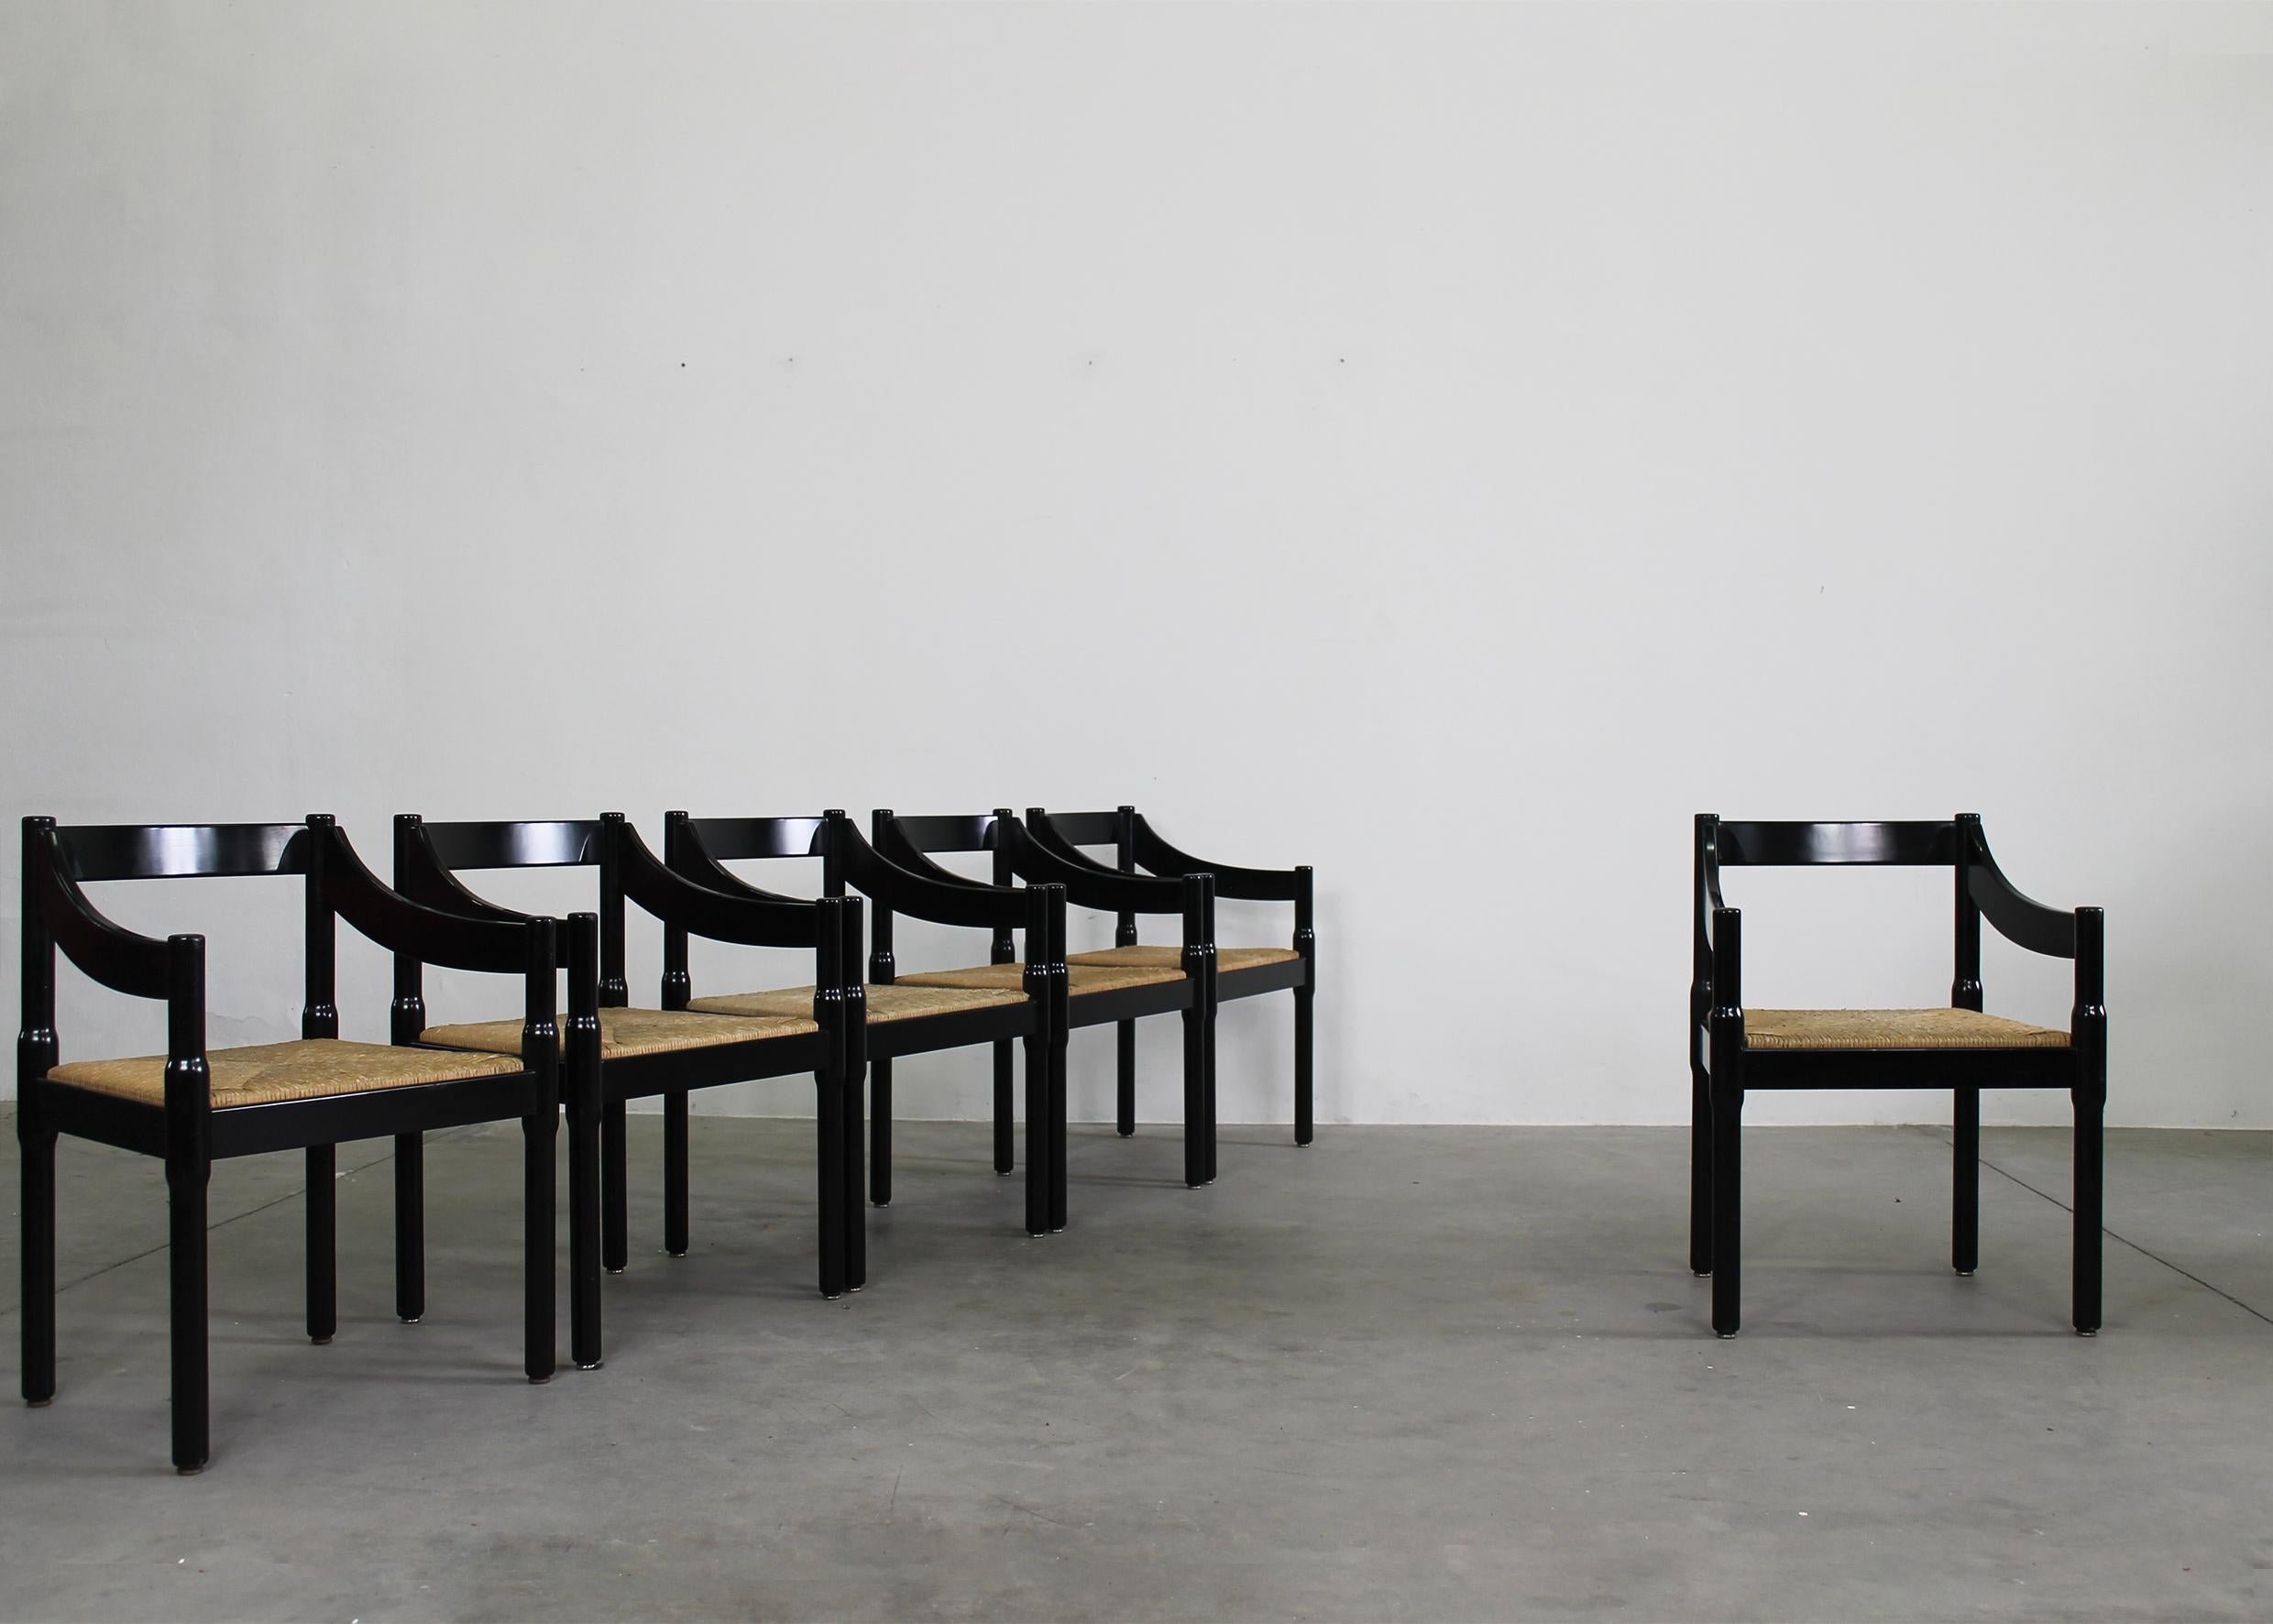 Ensemble de six chaises Carimate avec structure en bois de hêtre laqué noir et assise en paille tressée, conçues par Vico Magistretti et produites par Cassina dans les années 1960. 

La chaise Carimate a été conçue à l'origine pour le Carimate Club